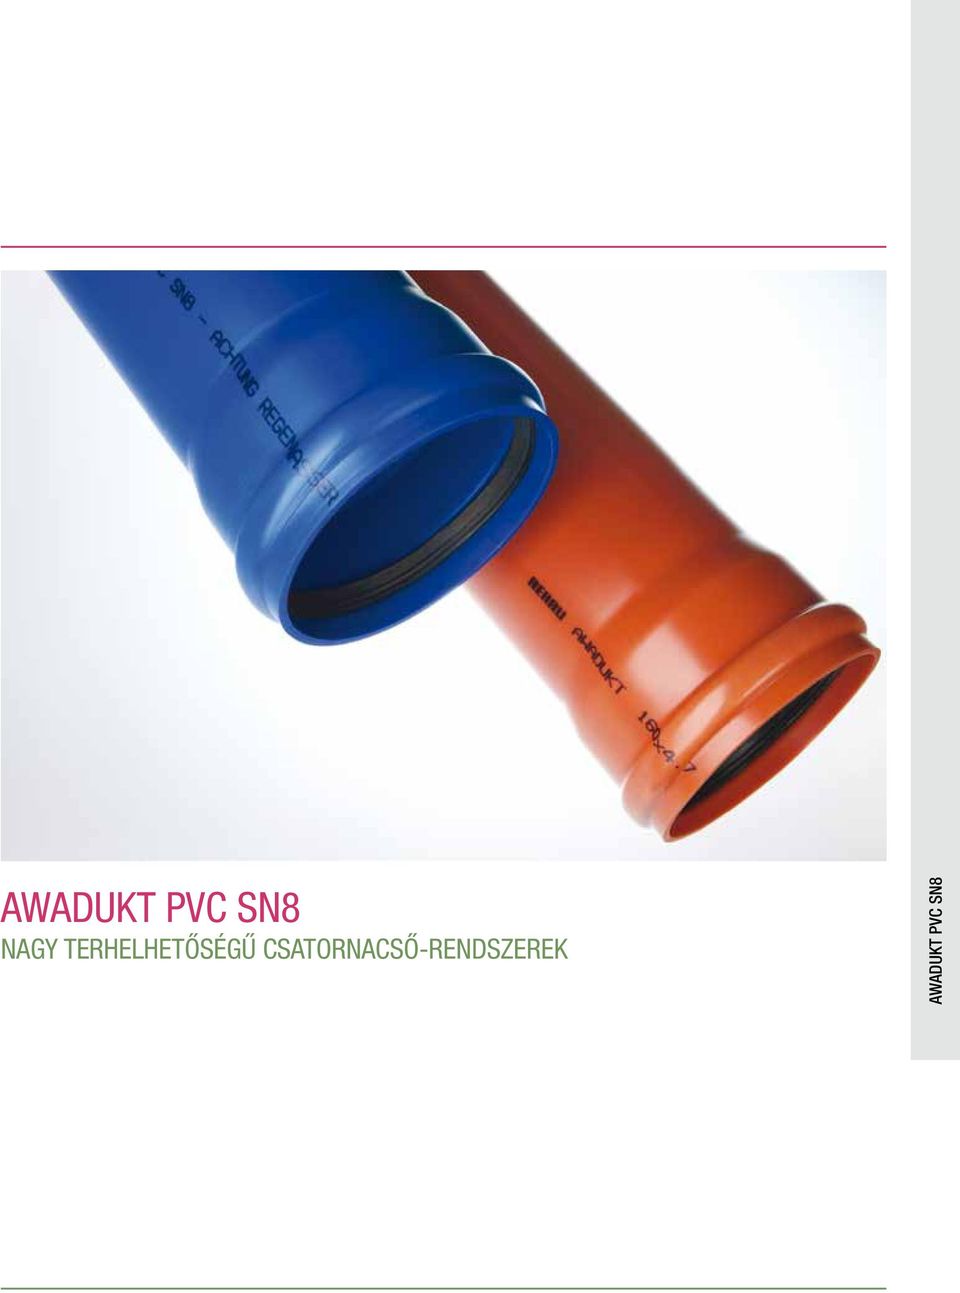 AWADUKT PVC SN8 AWADUKT PVC SN8 - PDF Ingyenes letöltés